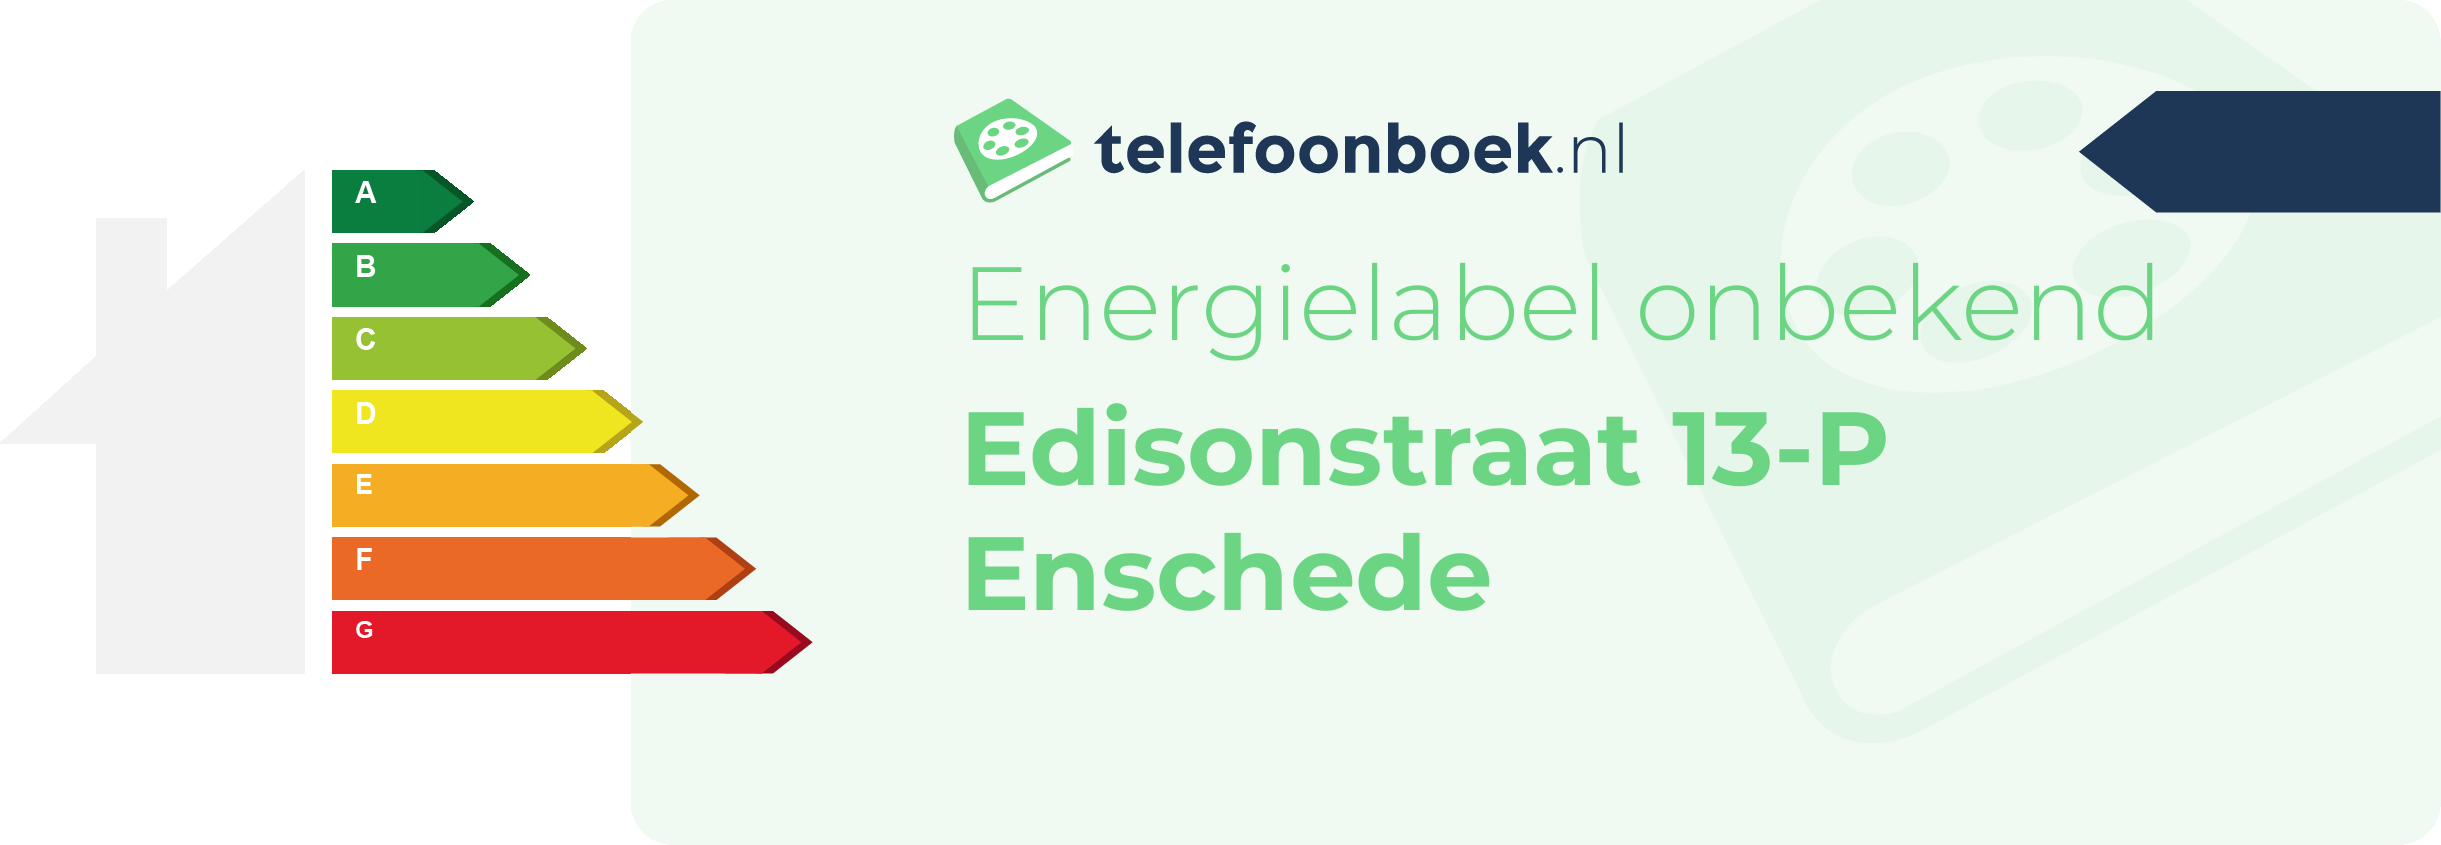 Energielabel Edisonstraat 13-P Enschede